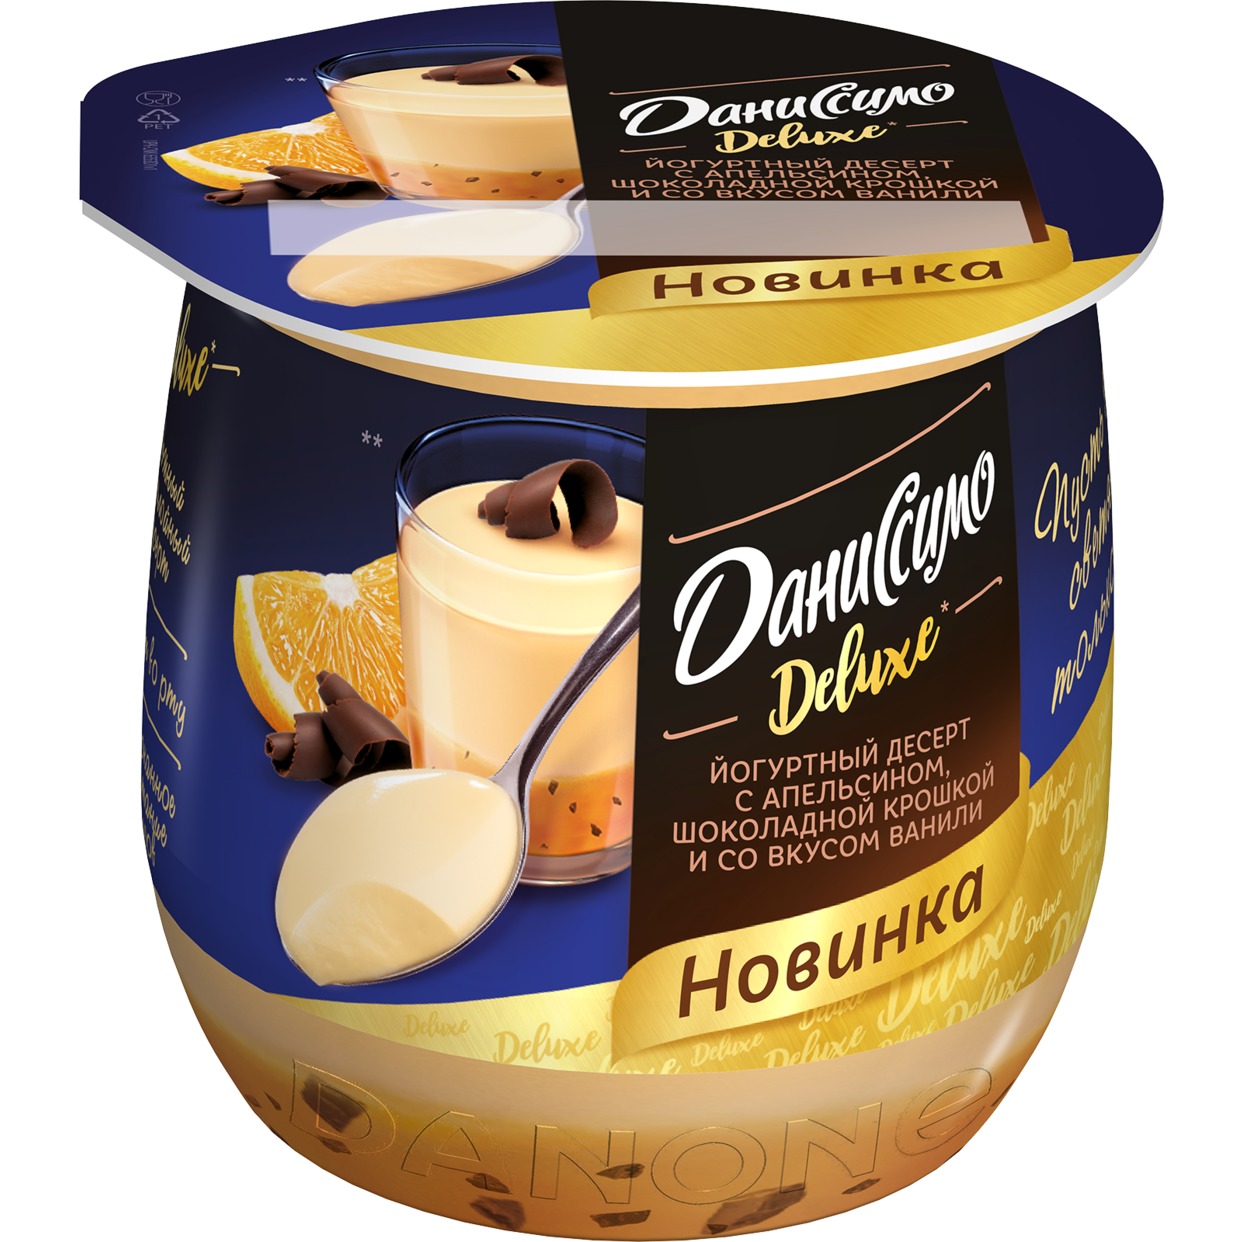 Даниссимо десерт кисломолоч йогуртн термостат со вкусом ванили и с апельсином и шоколадной крошкой «Deluxe Пудинг» 4,6% 160г